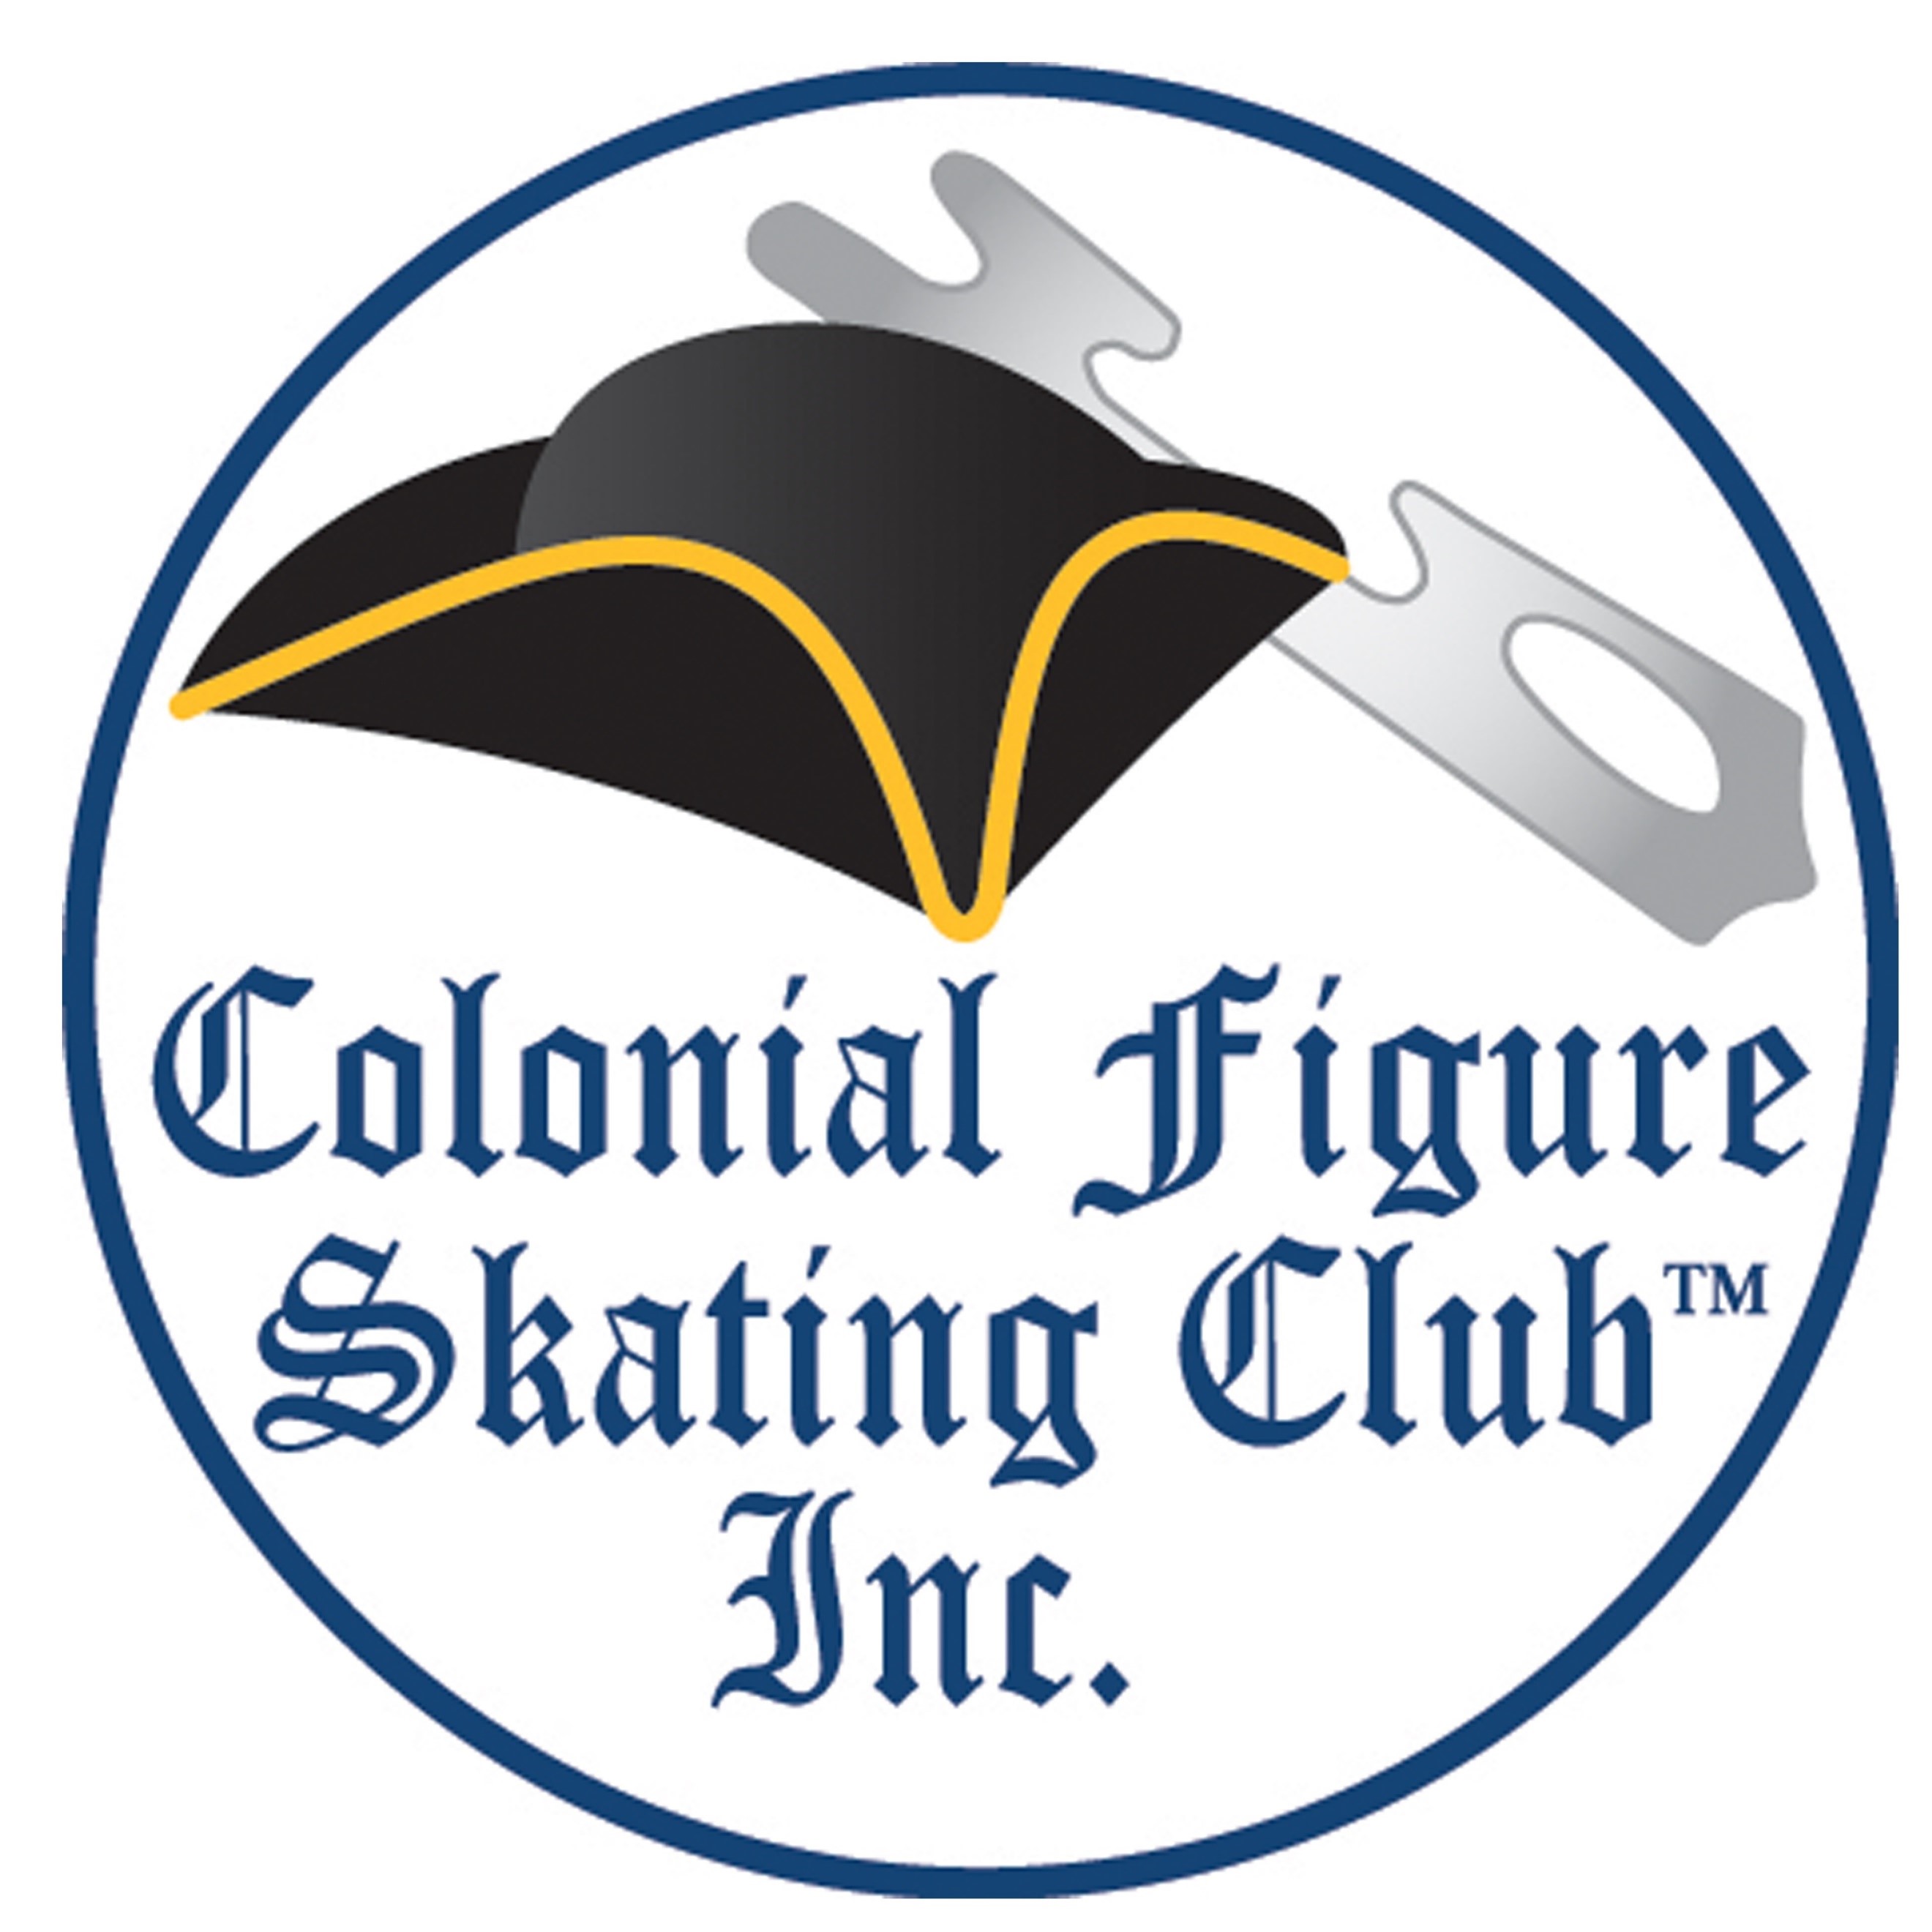 Colonial Figure Skating Club logo